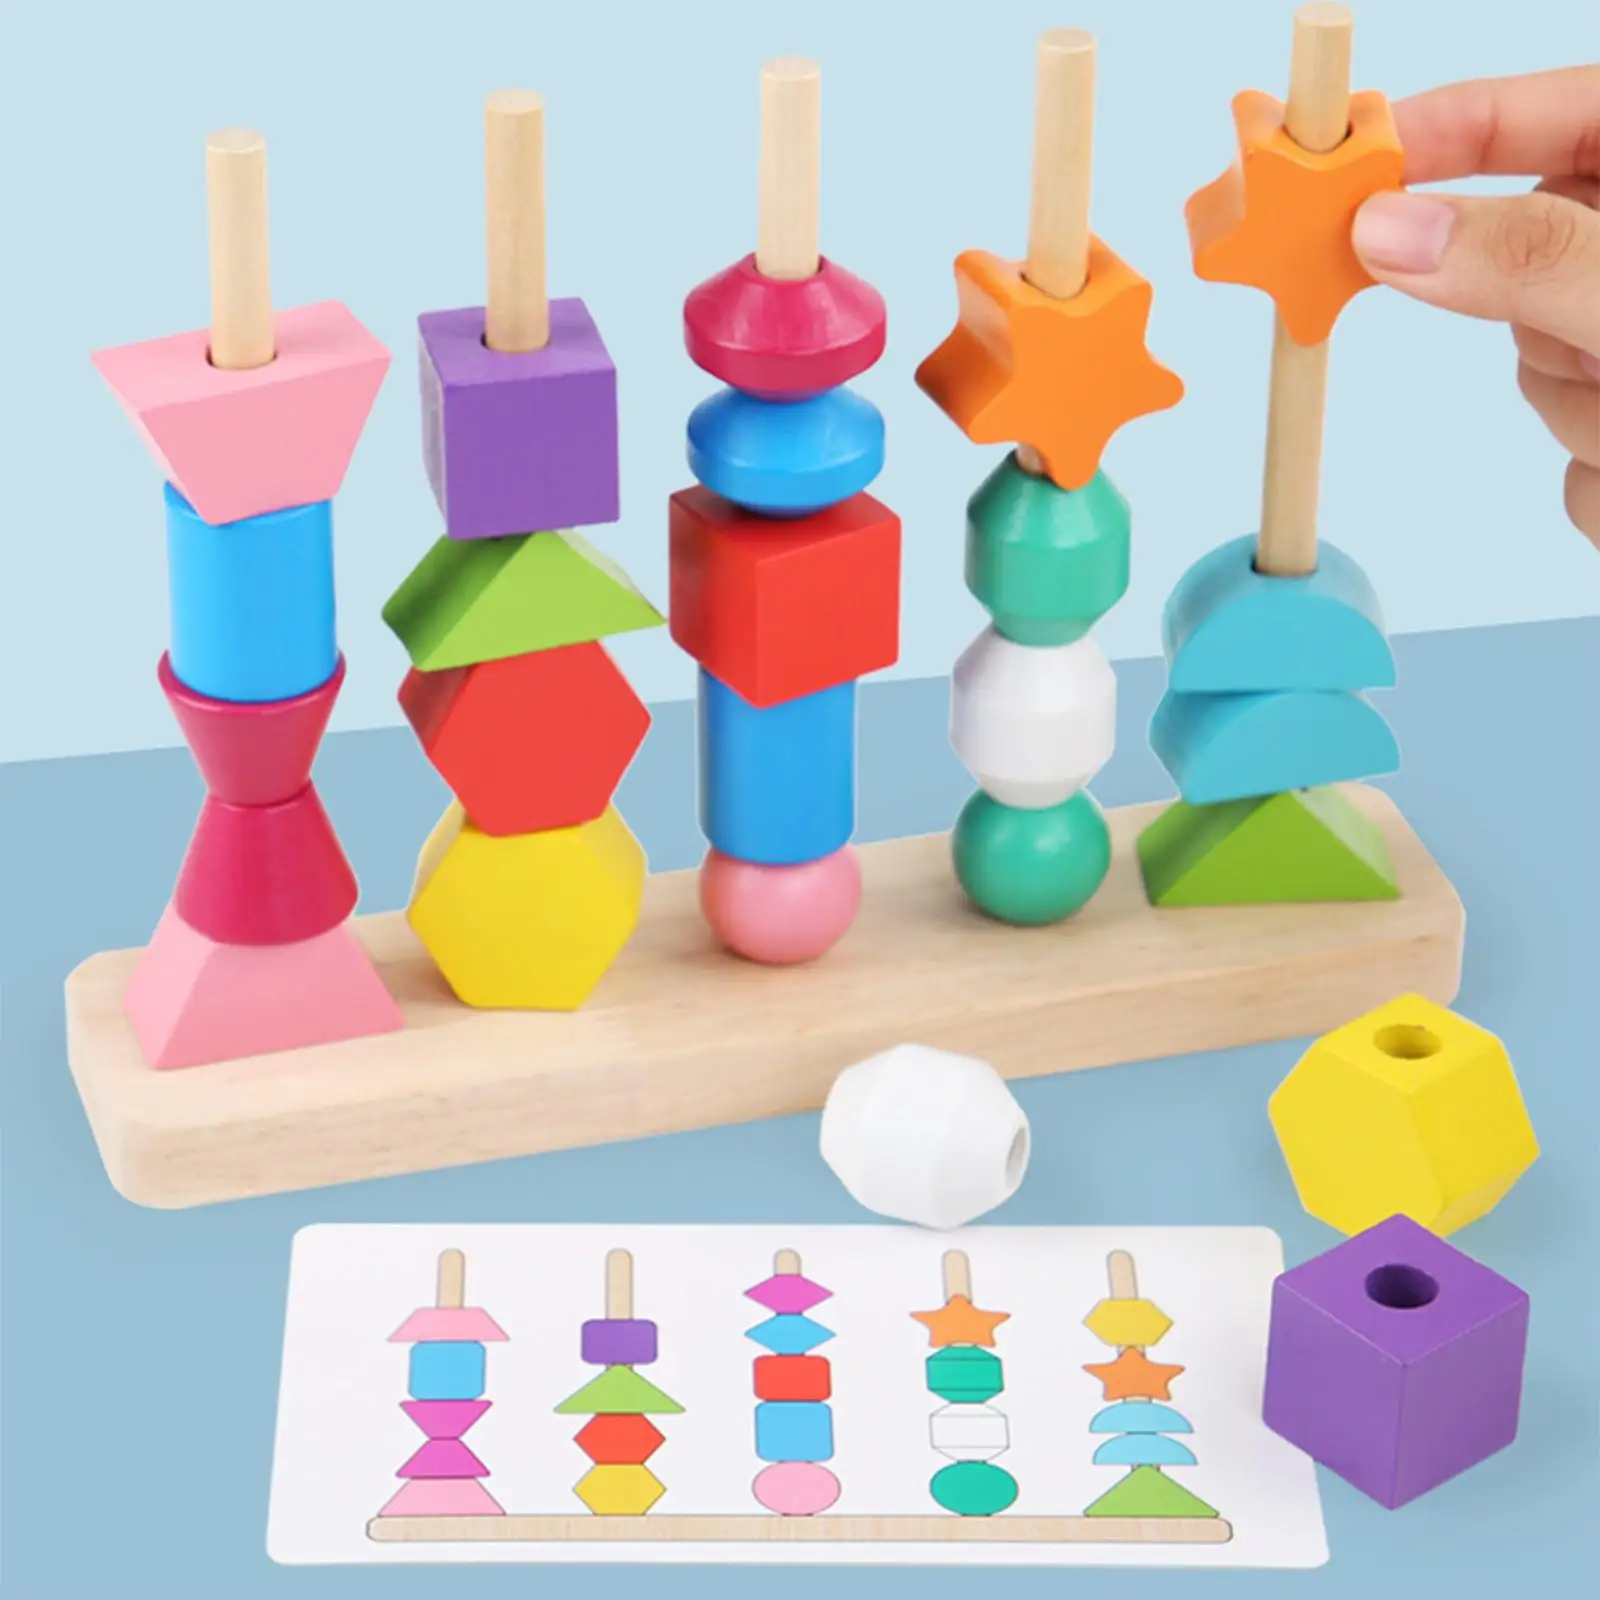 Beaded Toys Enlightenment Sensory Toys Educational for Birthday Gift Kids Children